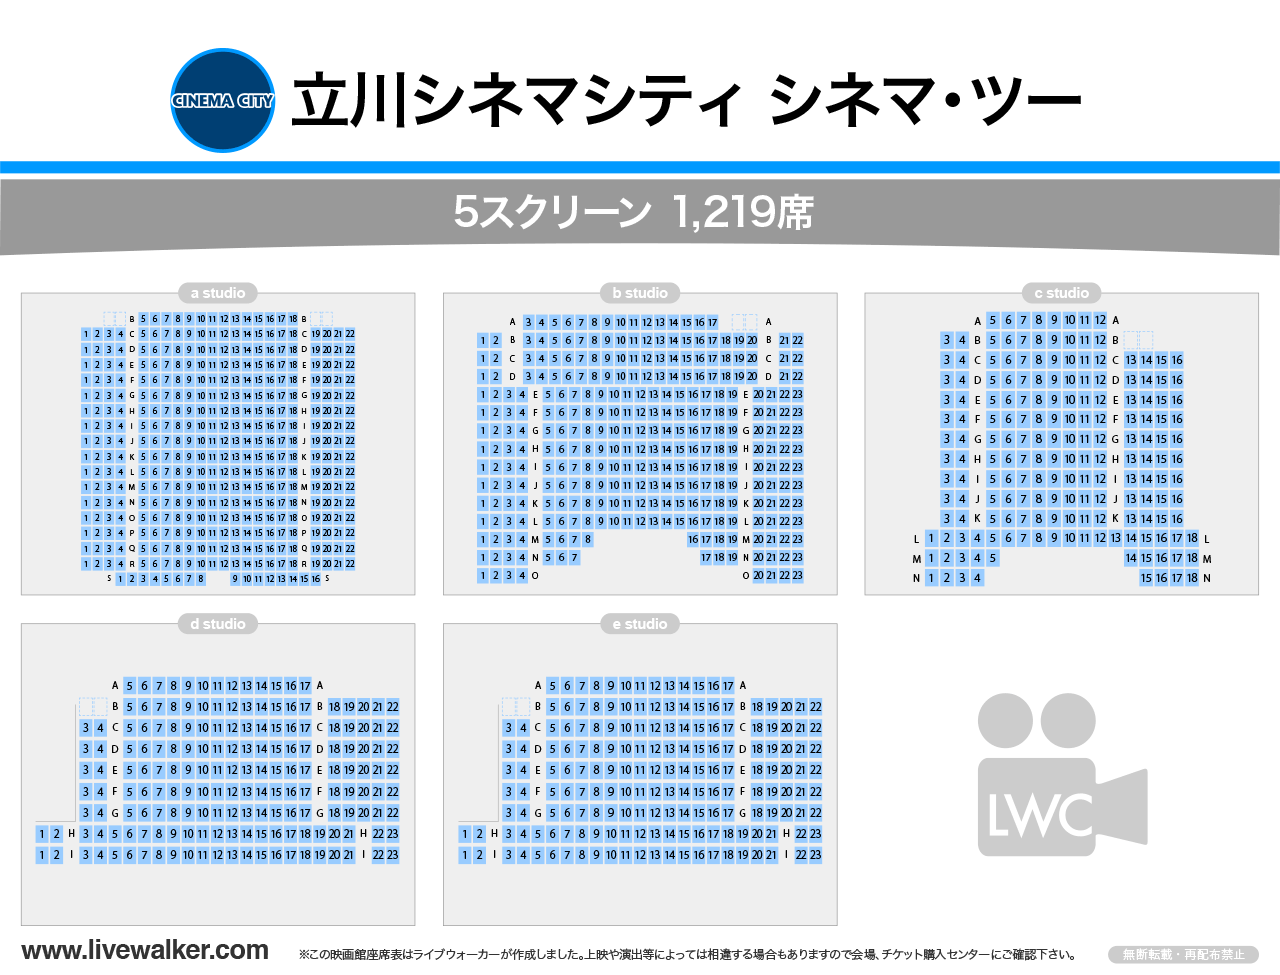 立川シネマシティ シネマ・ツースタジオの座席表